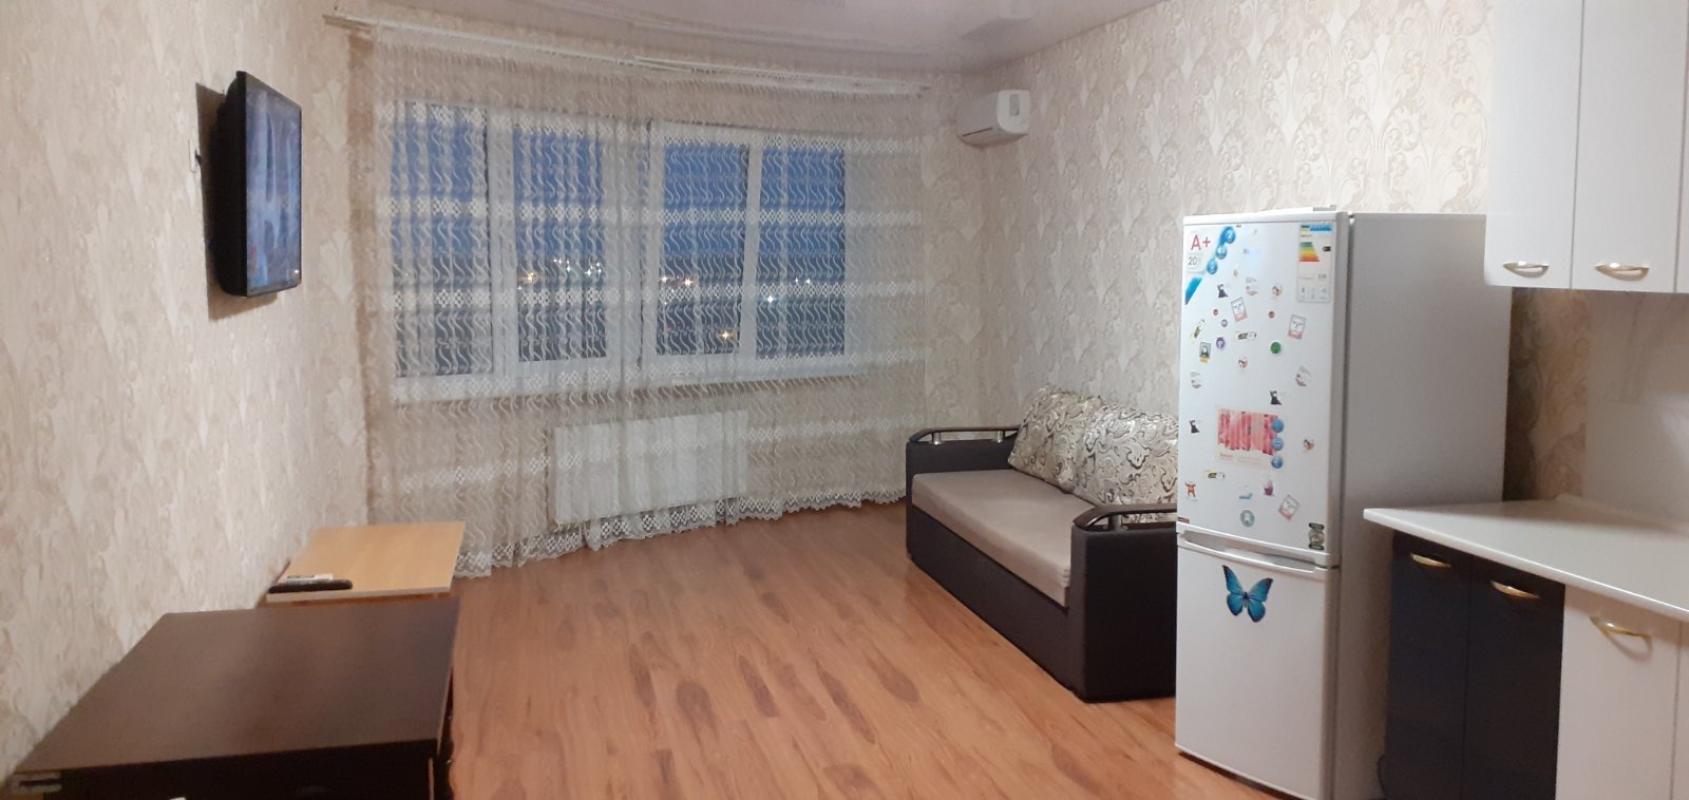 Sale 1 bedroom-(s) apartment 53 sq. m., Kharkivske Road 19